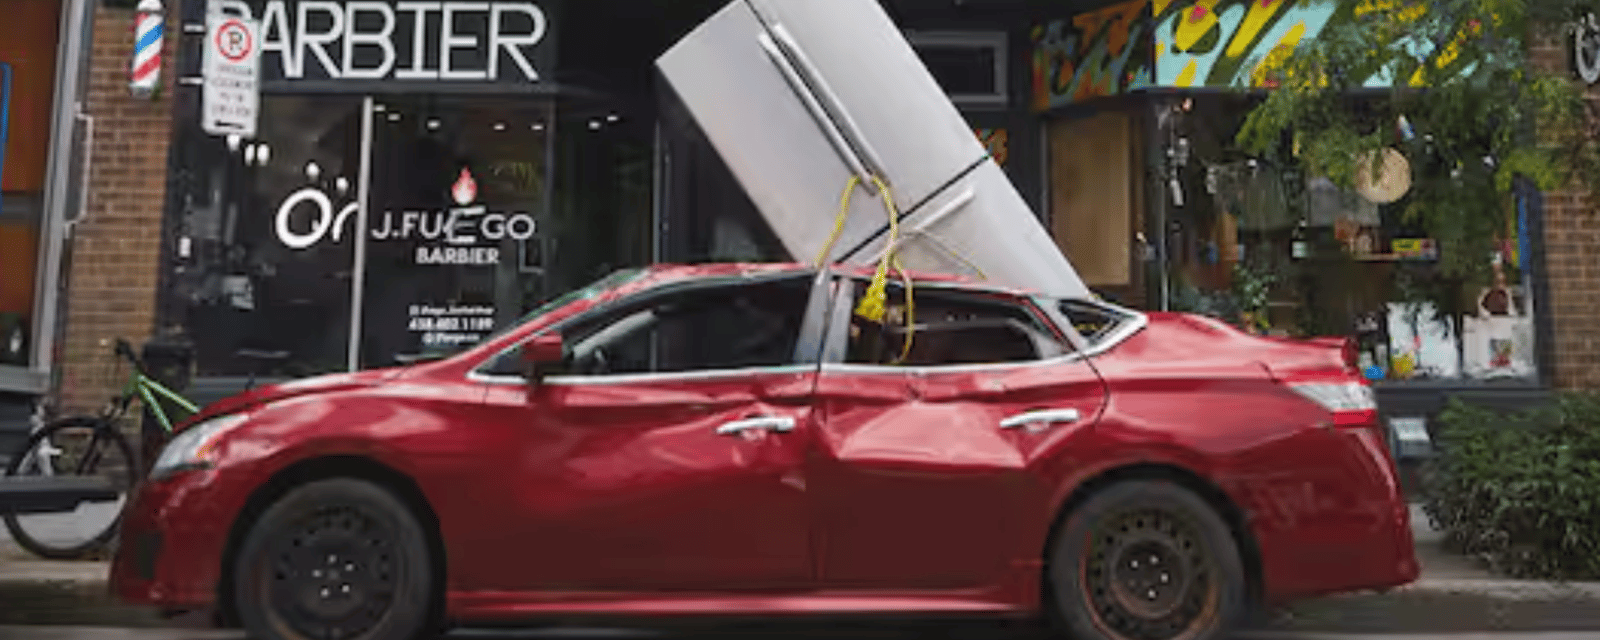 Un grand nombre de Québécois se sont fait avoir par une mise en scène d'un frigo tombé sur une voiture